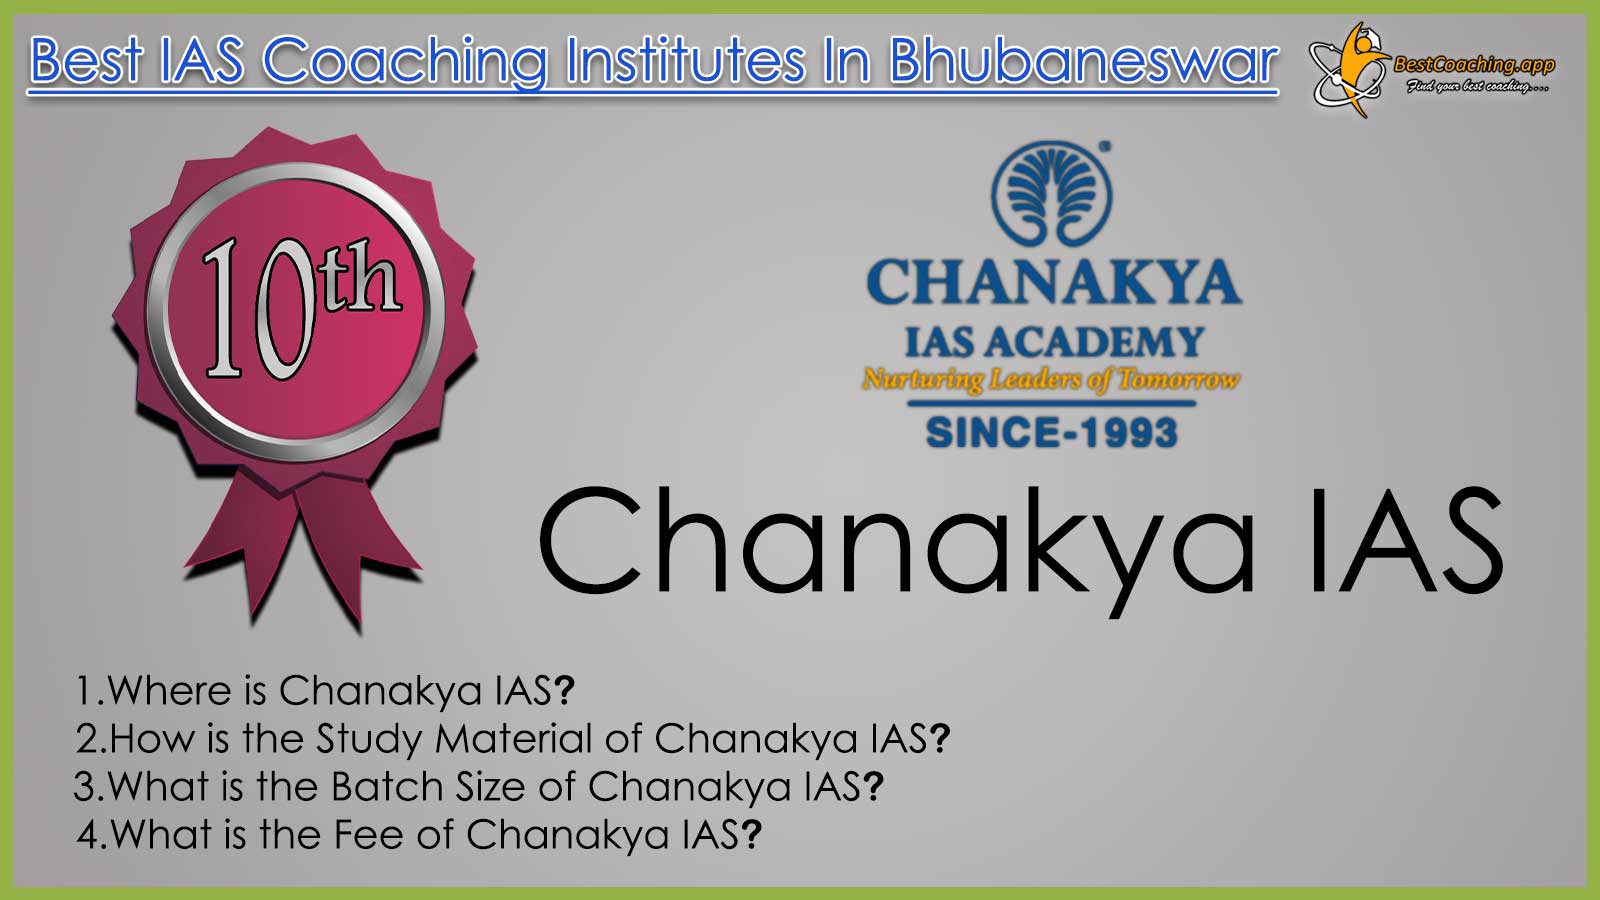 Chanakya IAS Coaching